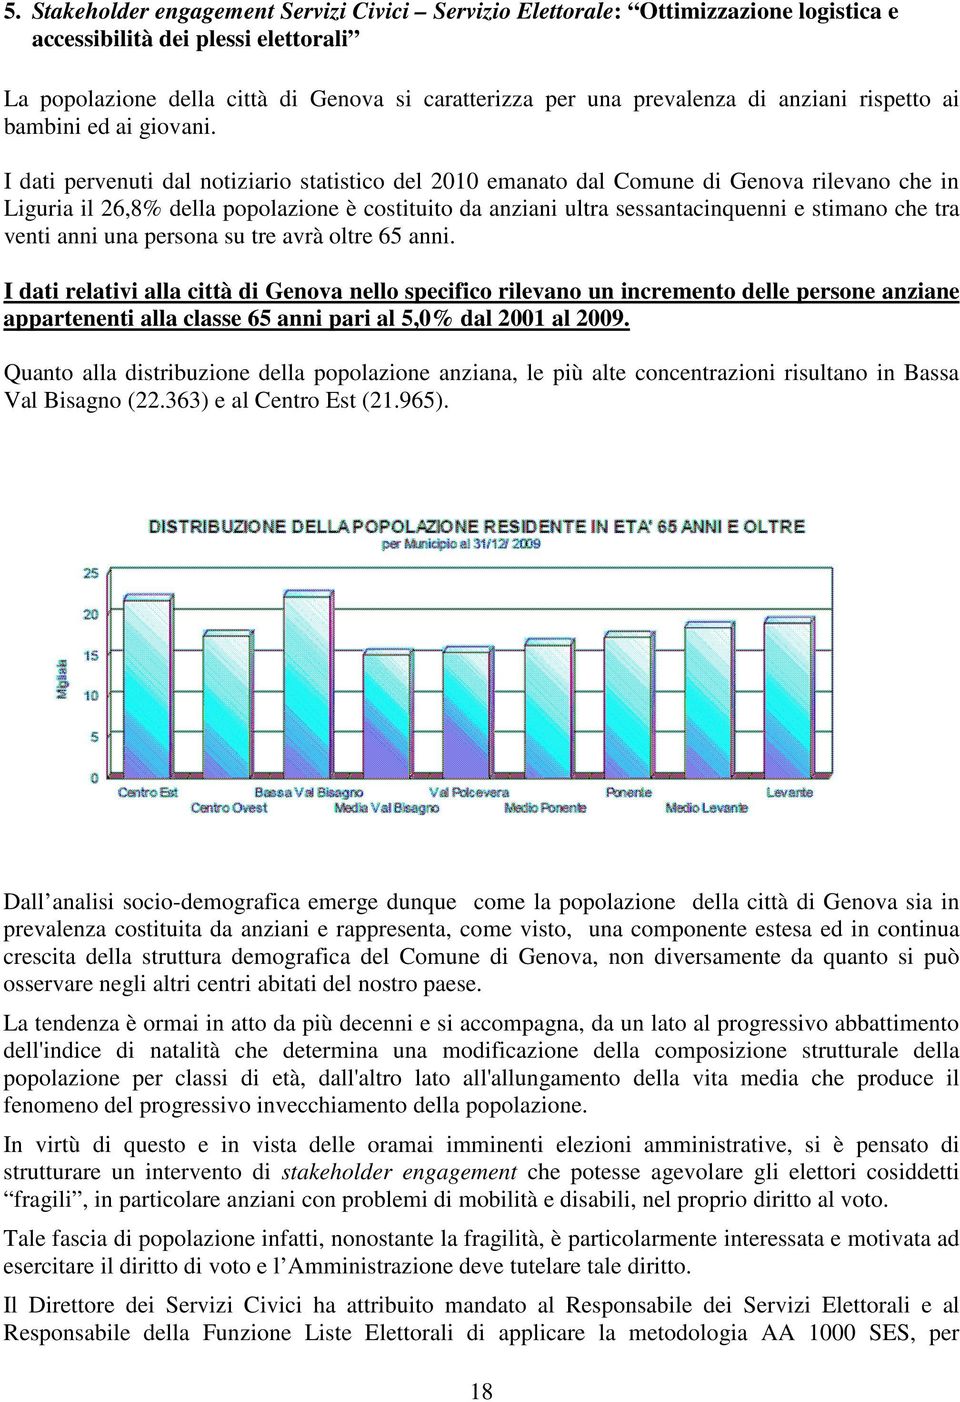 I dati pervenuti dal notiziario statistico del 2010 emanato dal Comune di Genova rilevano che in Liguria il 26,8% della popolazione è costituito da anziani ultra sessantacinquenni e stimano che tra